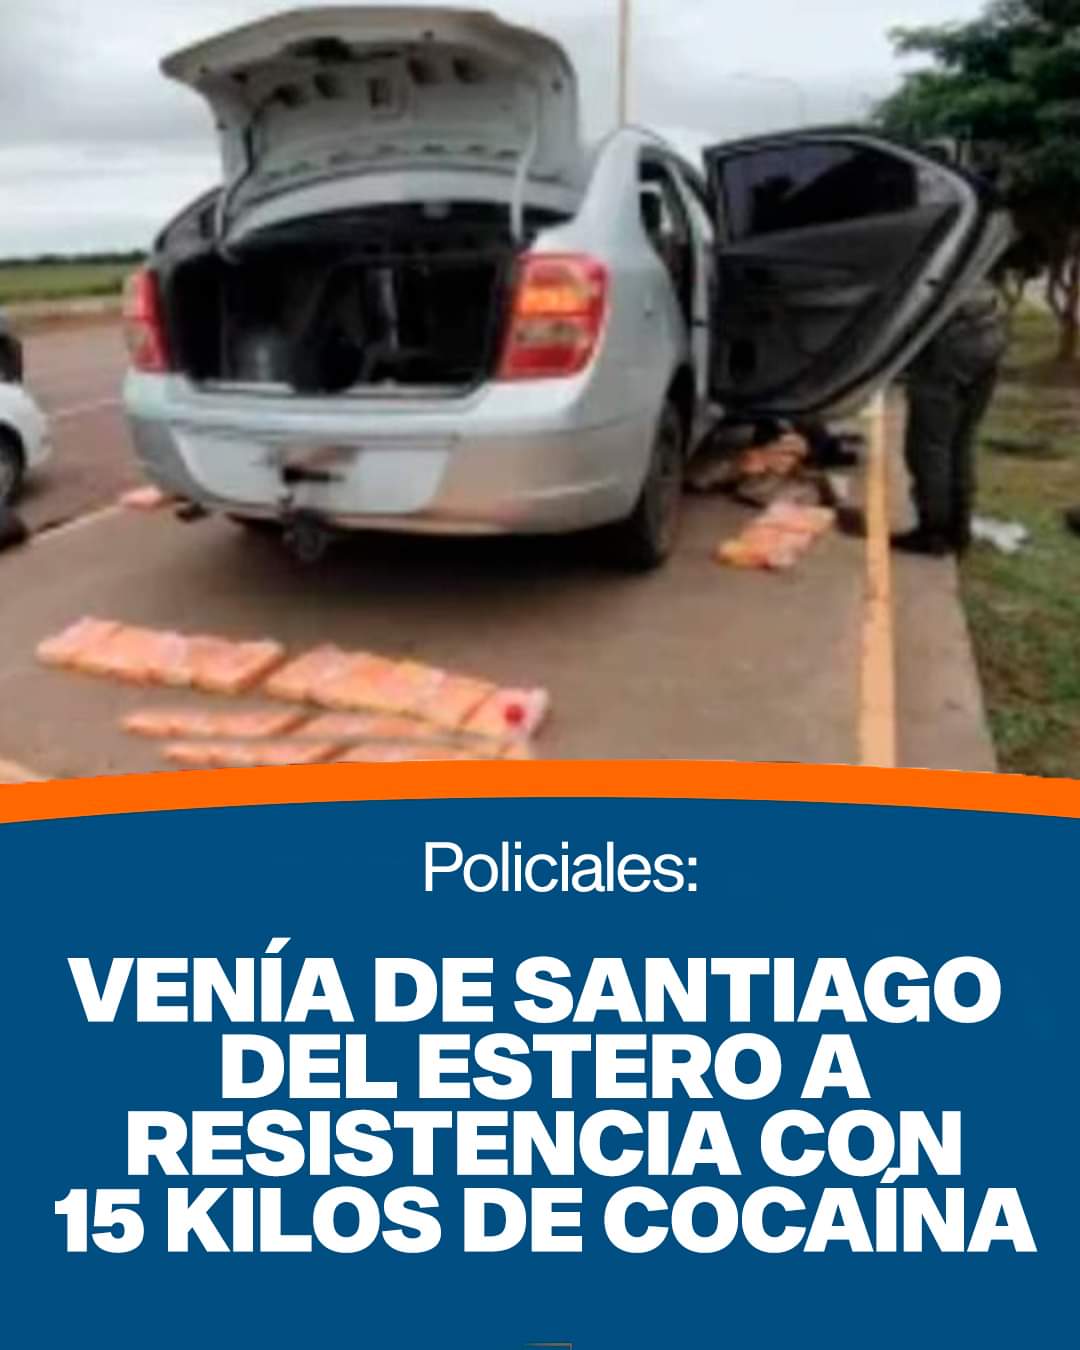 VENÍA DE SANTIAGO DEL ESTERO A RESISTENCIA CON 15 KILOS DE COCAÍNA